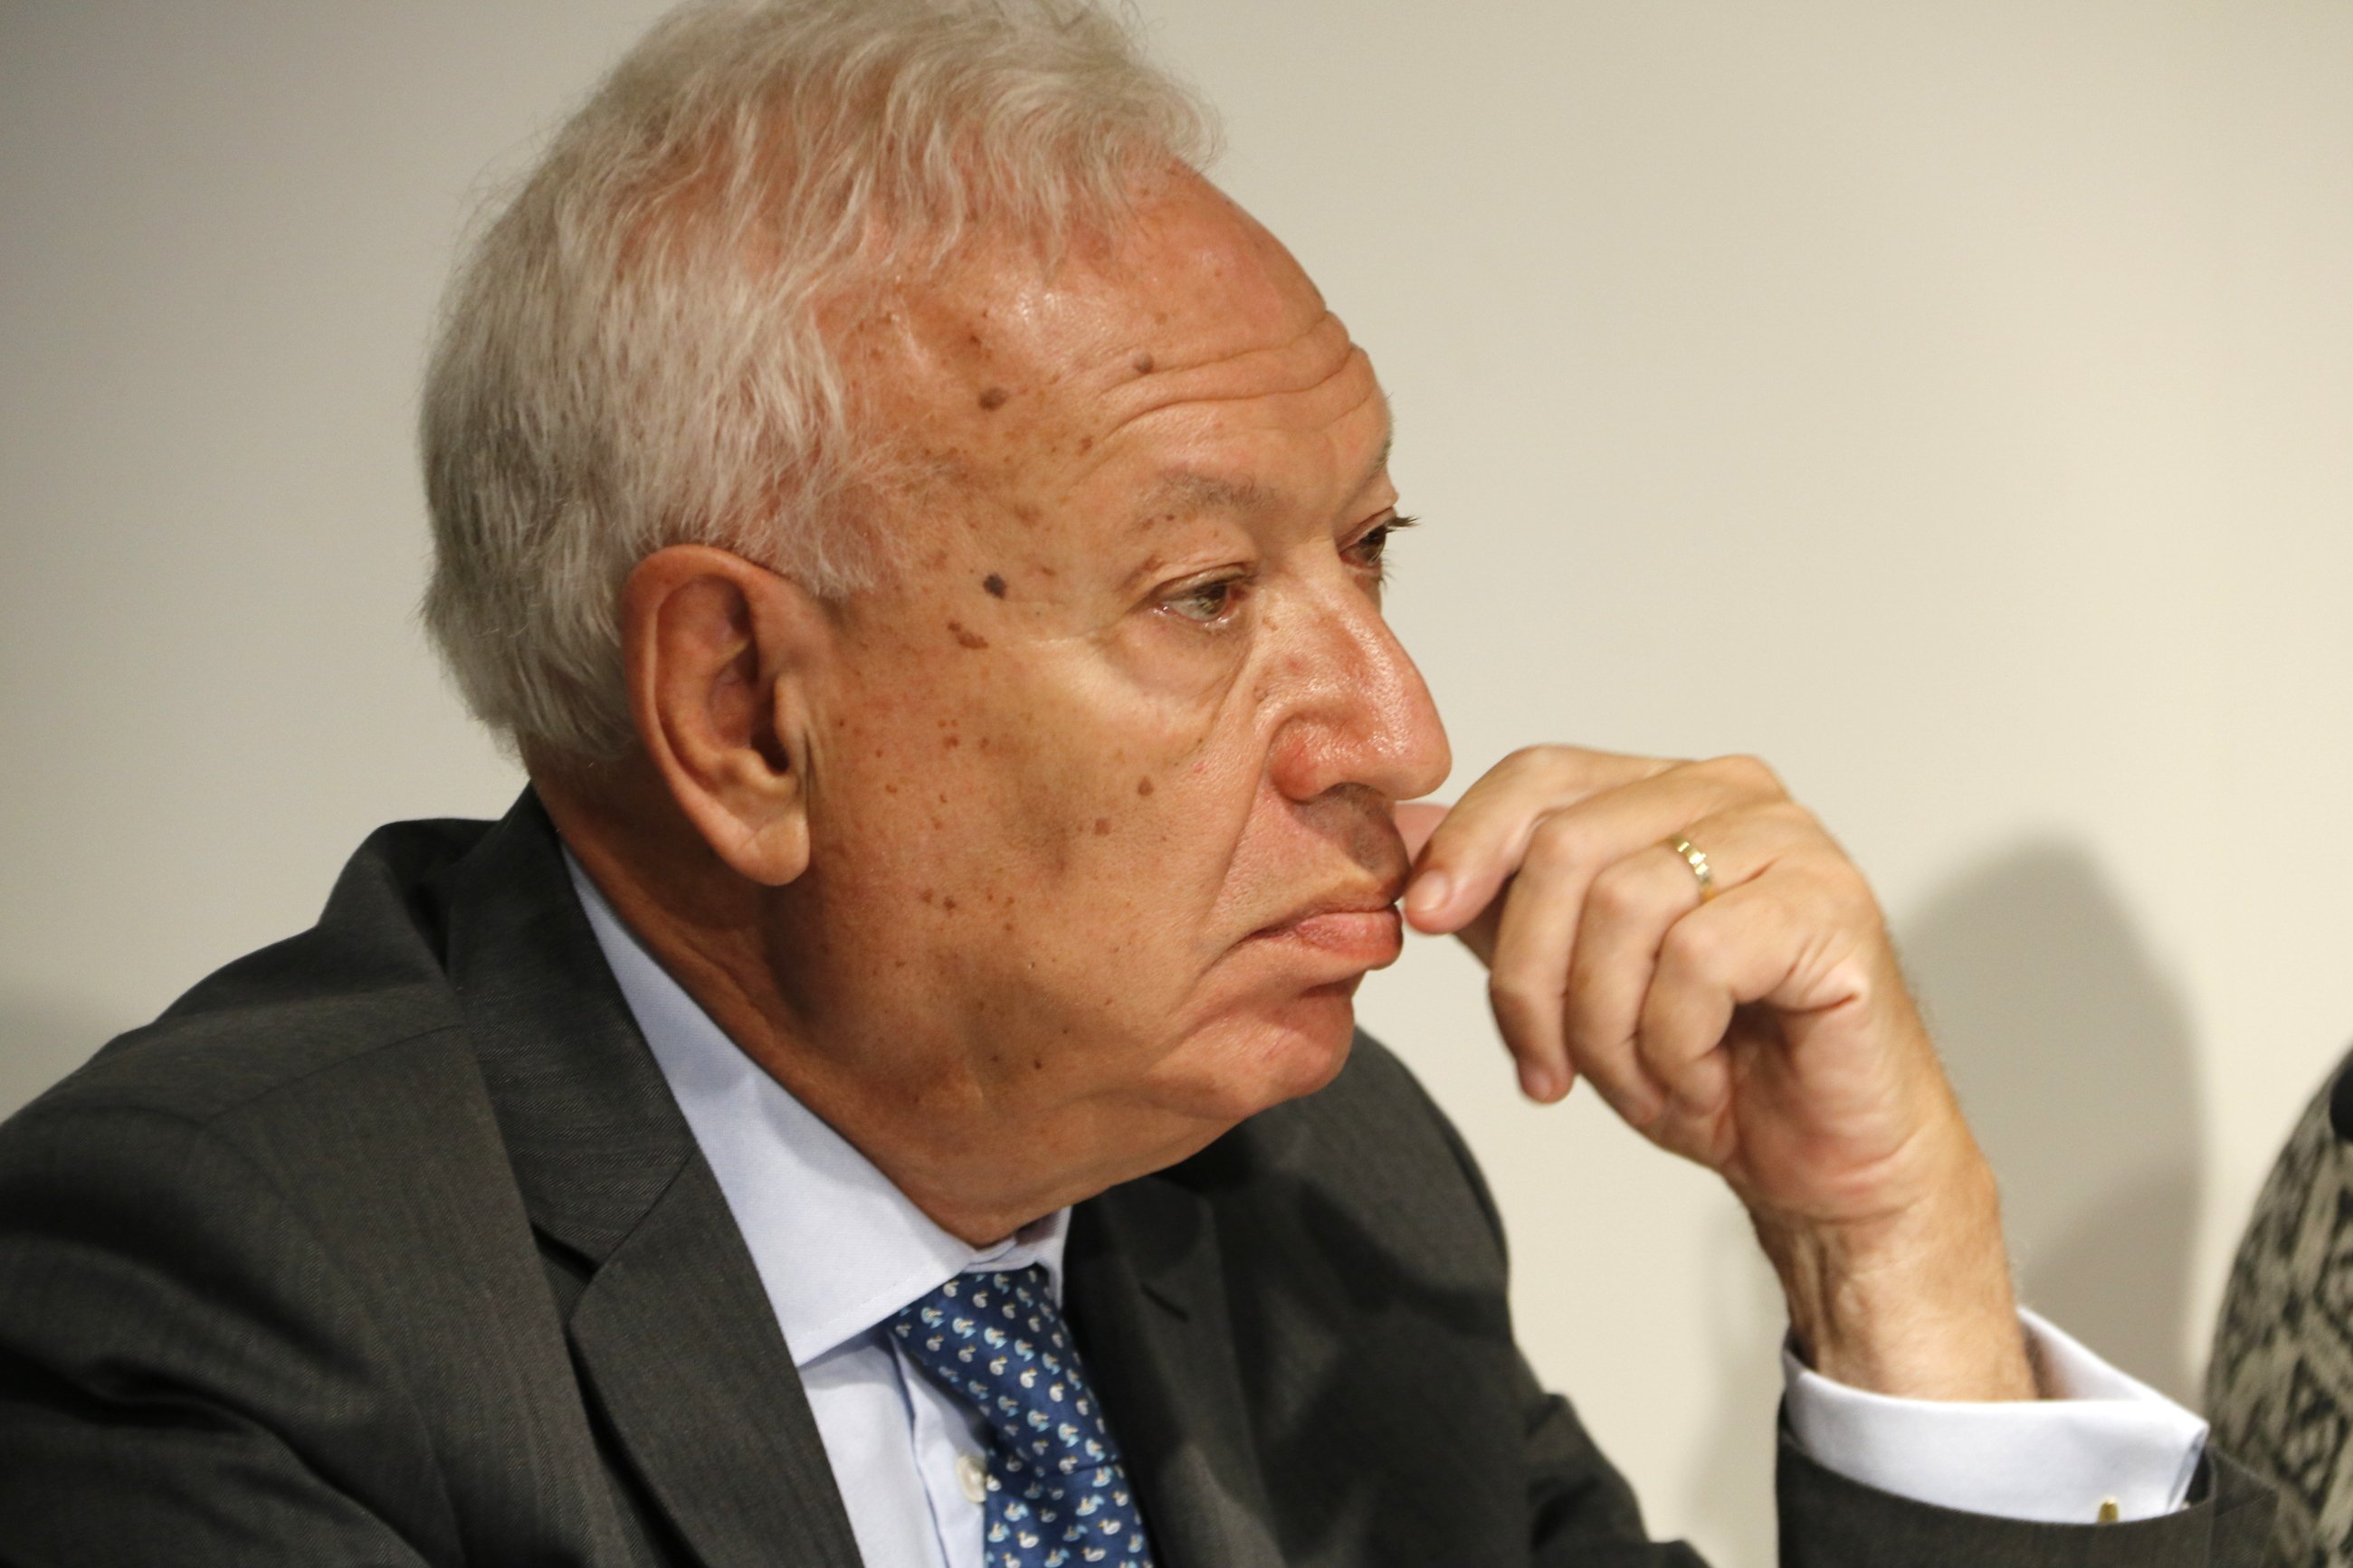 Margallo aposta per “desallotjar el Parlament” si es declara la independència unilateralment